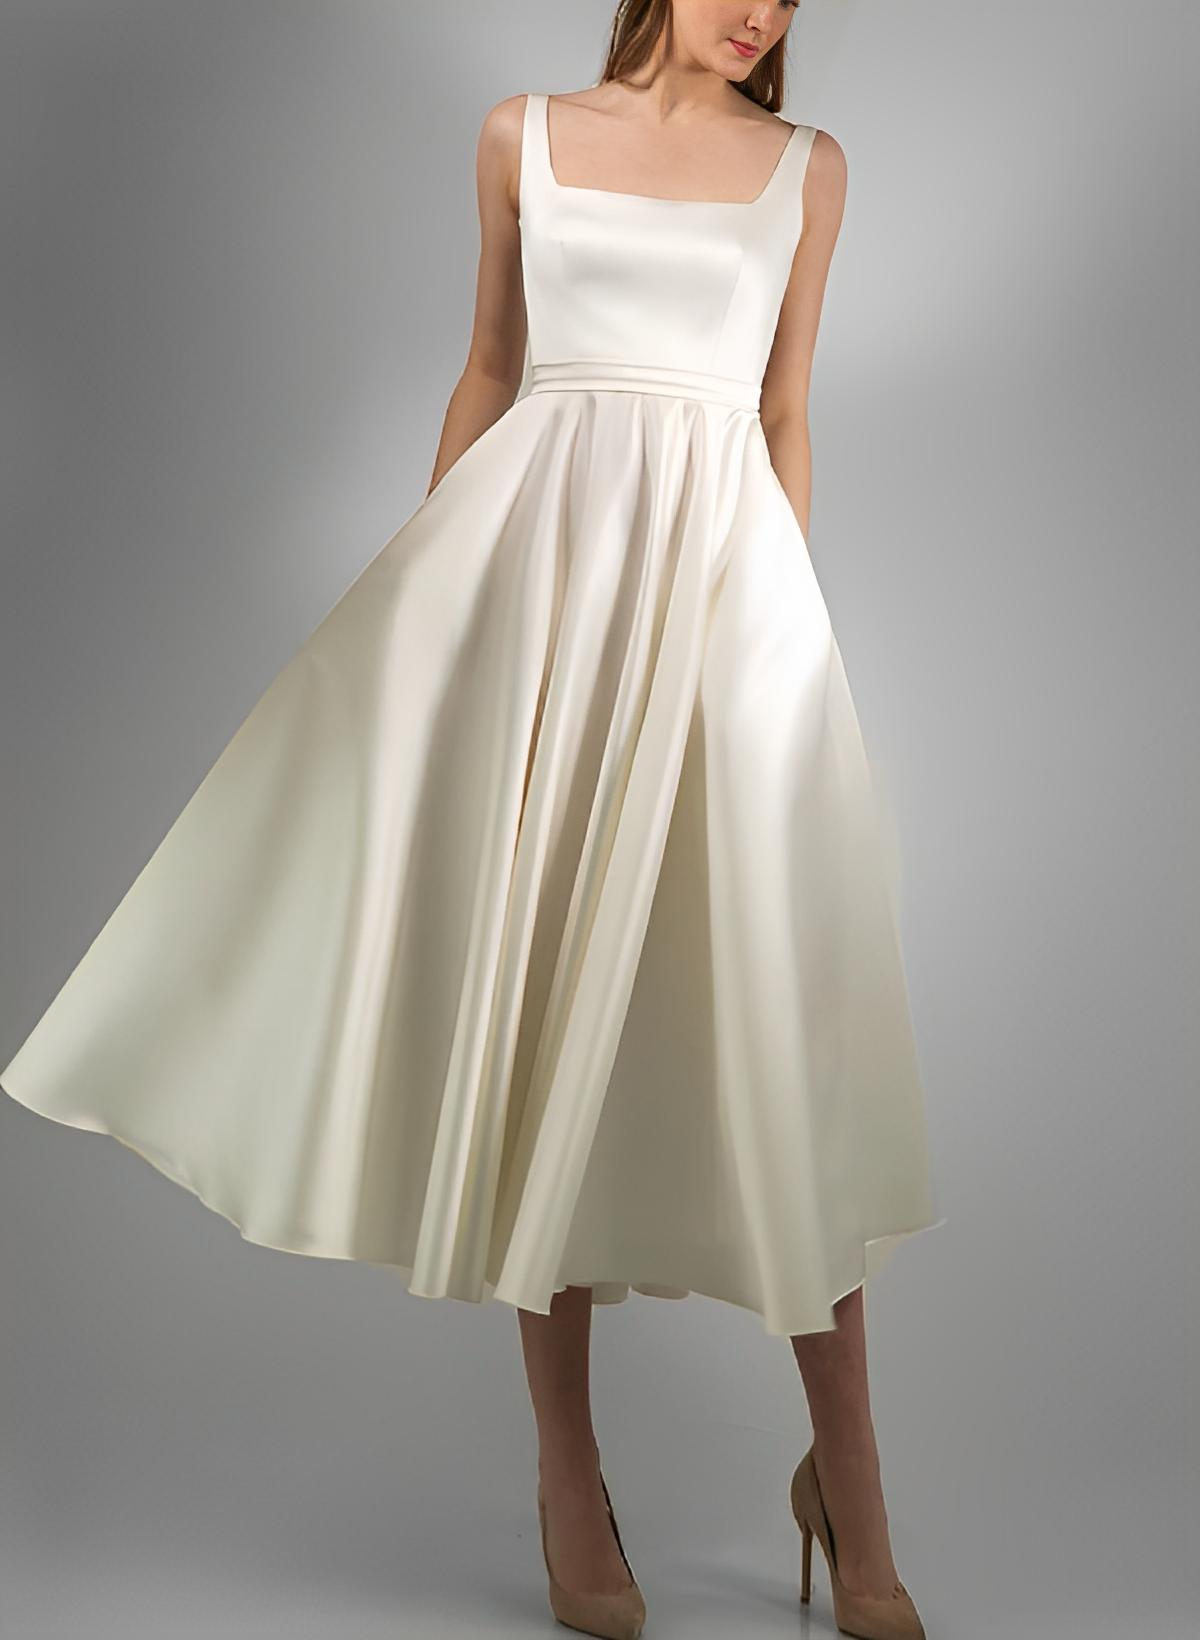 A-Line Square Neckline Sleeveless Tea-Length Satin Wedding Dresses With Pockets